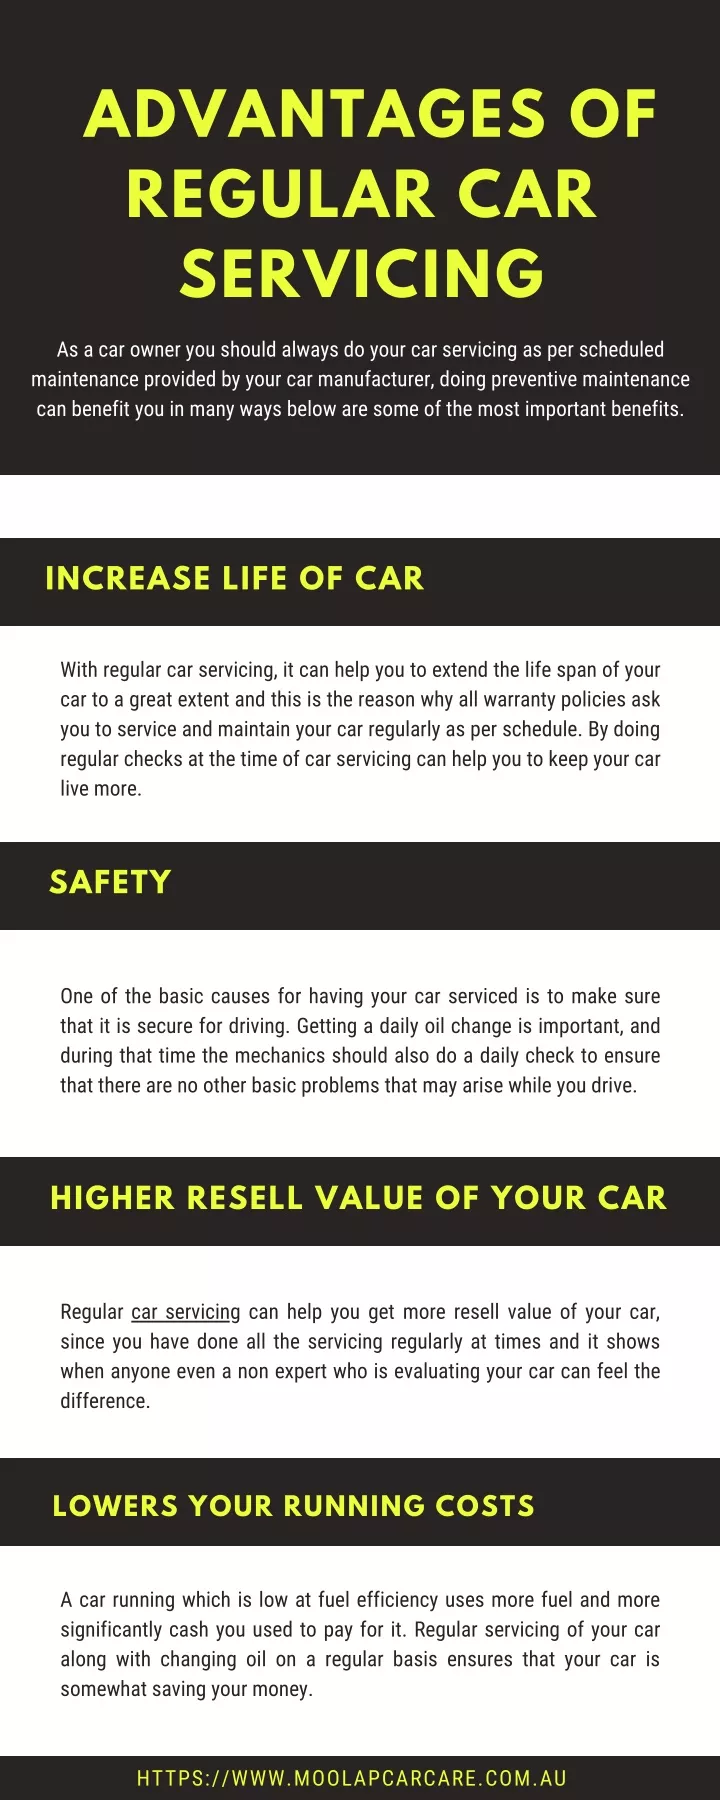 advantages of regular car servicing